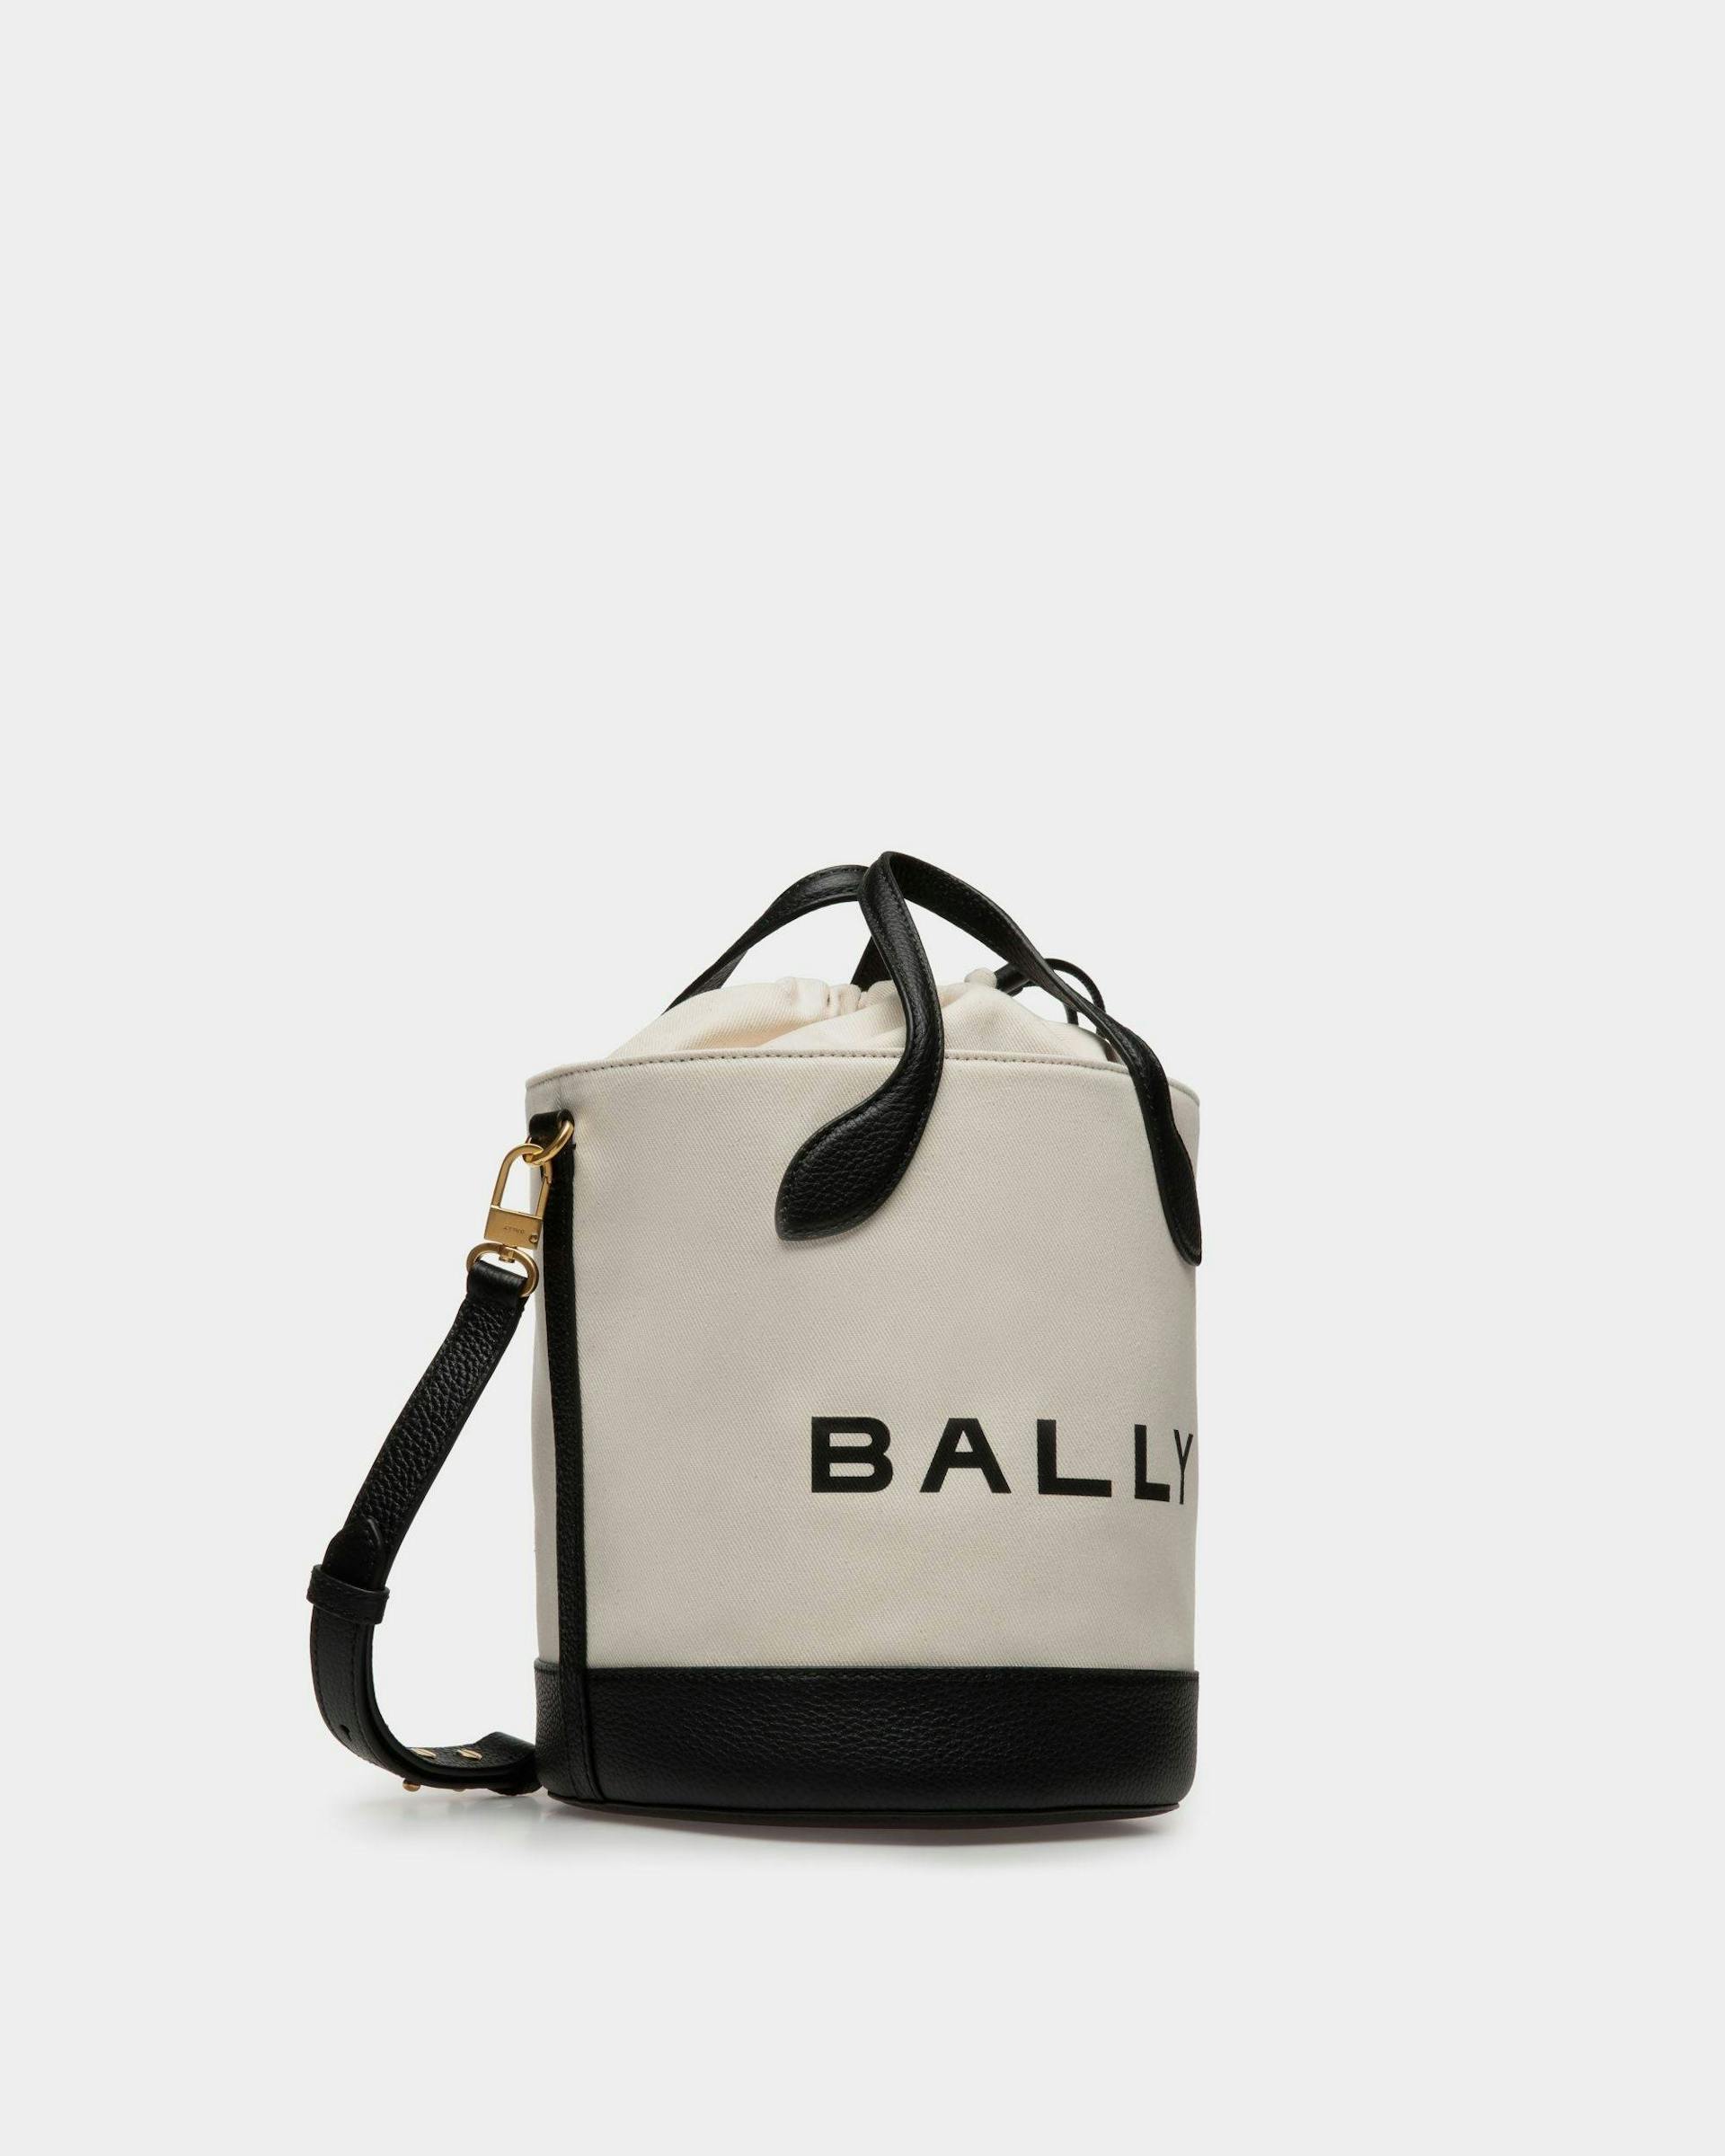 Bar バケットバッグ ナチュラル＆ブラック ファブリック - 女性 - Bally - 04